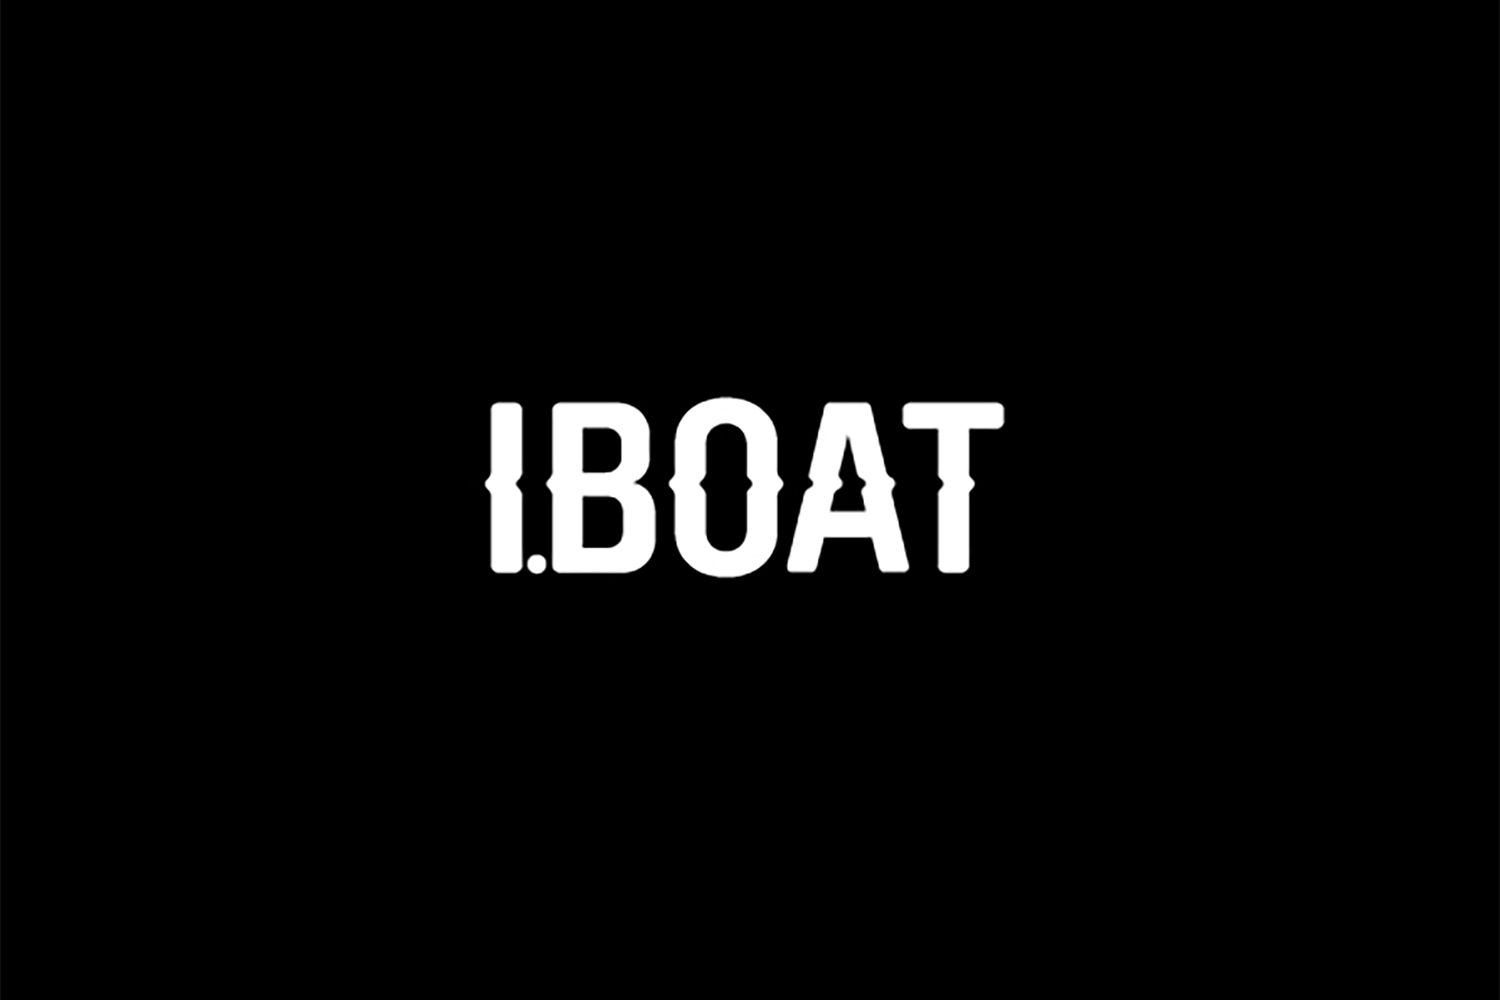 I Boat